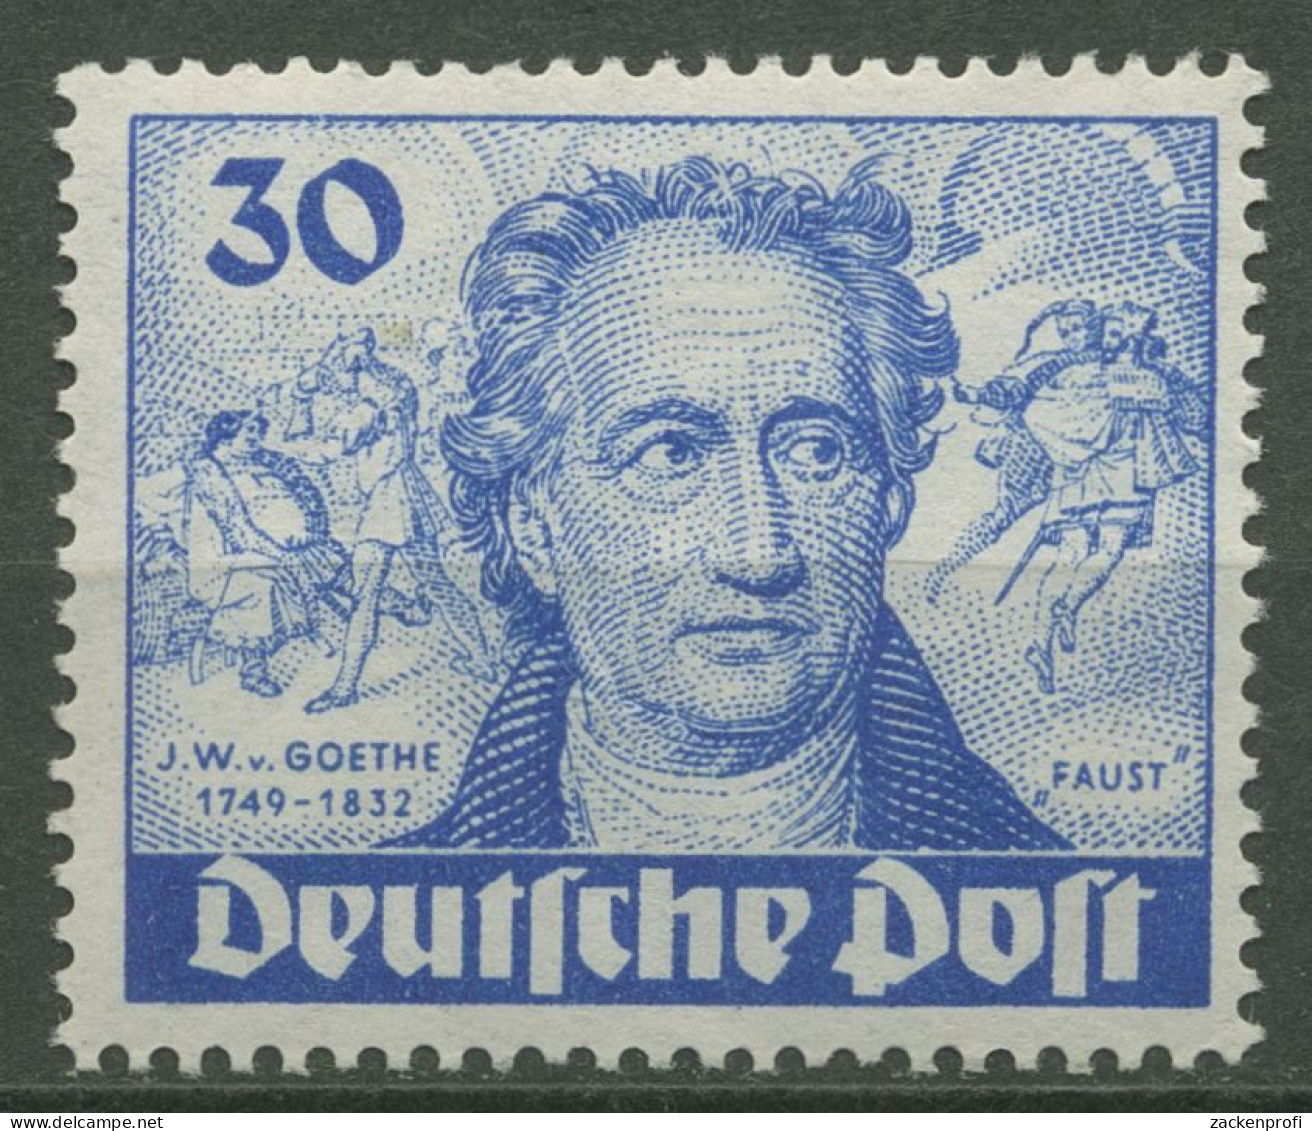 Berlin 1949 200. Geburtstag Goethes 63 Postfrisch, Bügig (R80764) - Nuovi